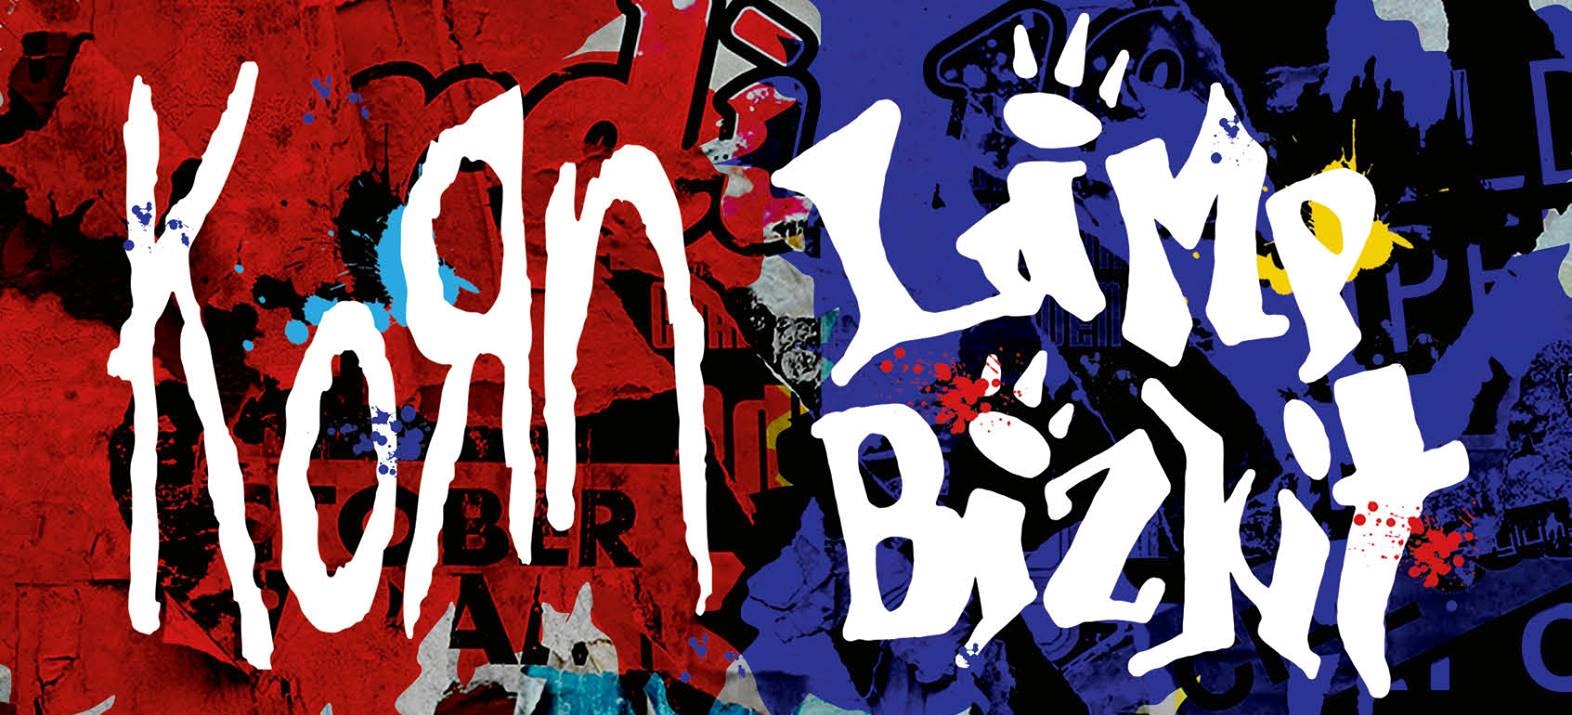 KORN and LIMP BIZKIT ANNOUNCE 2016 UK WINTER TOUR